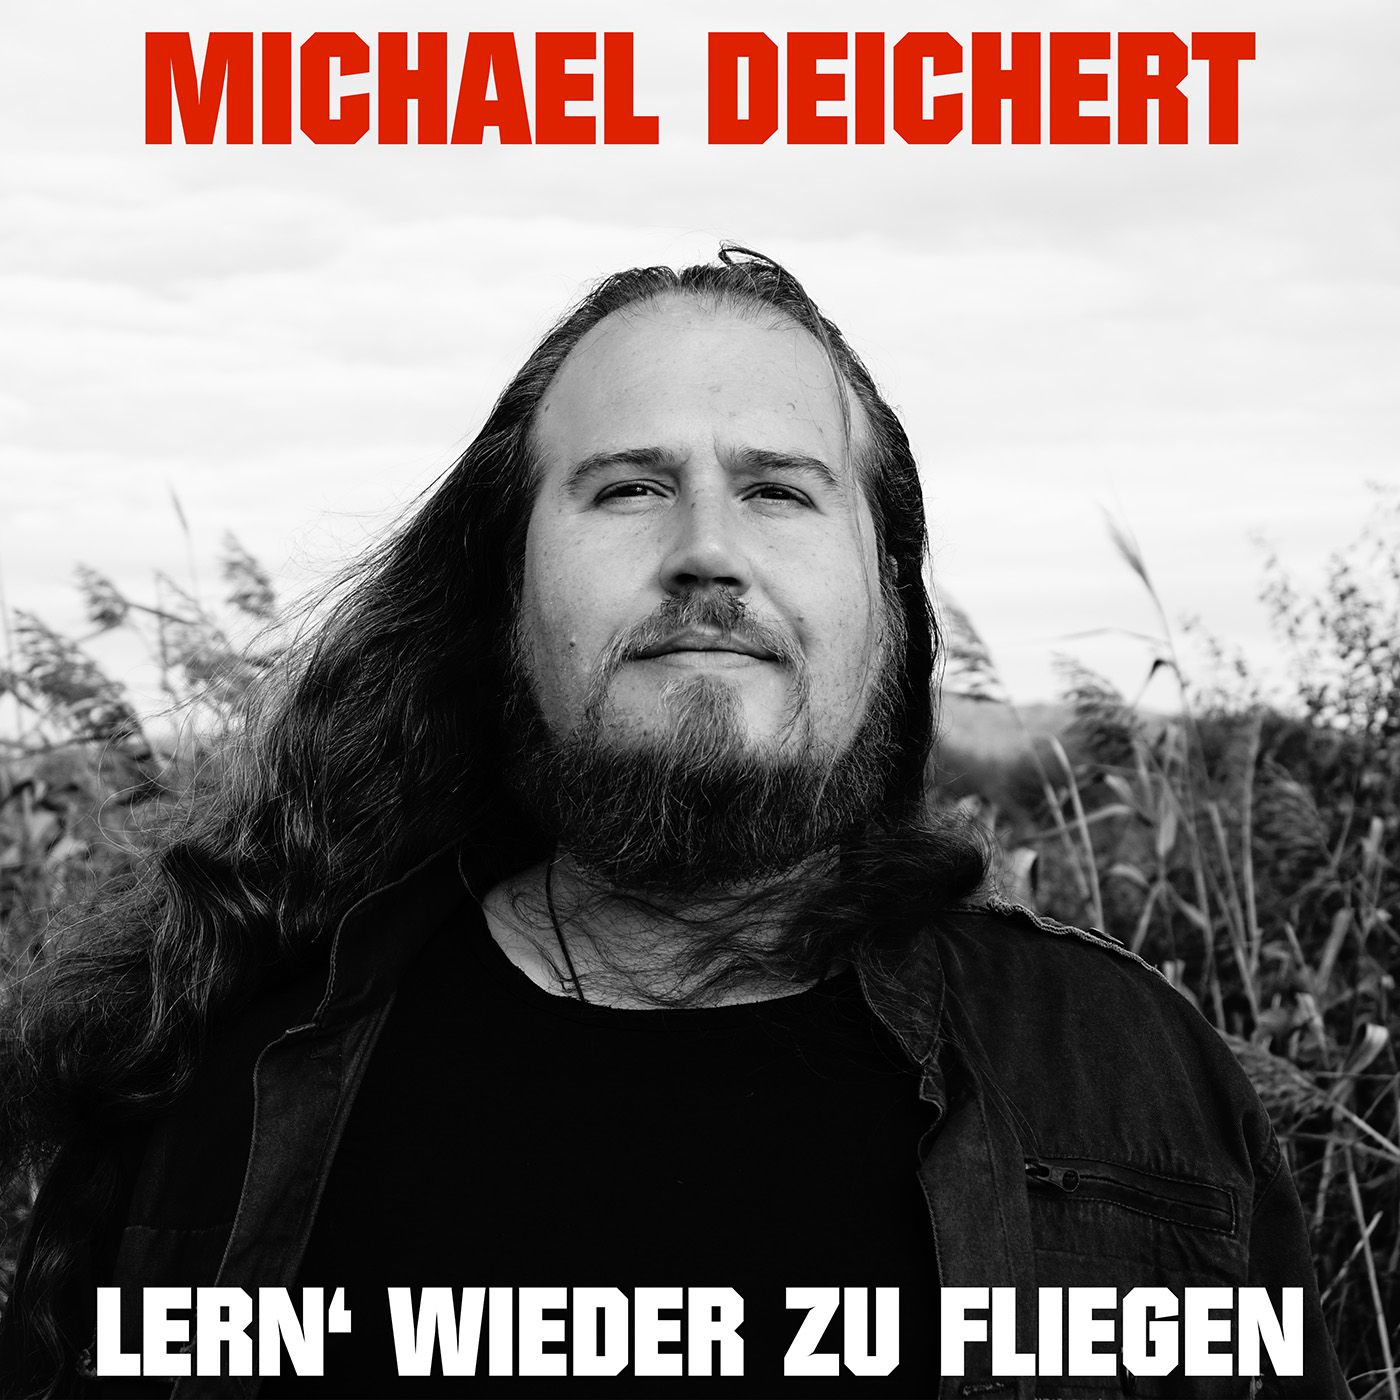 Michael Deichert veröffentlicht neue Single